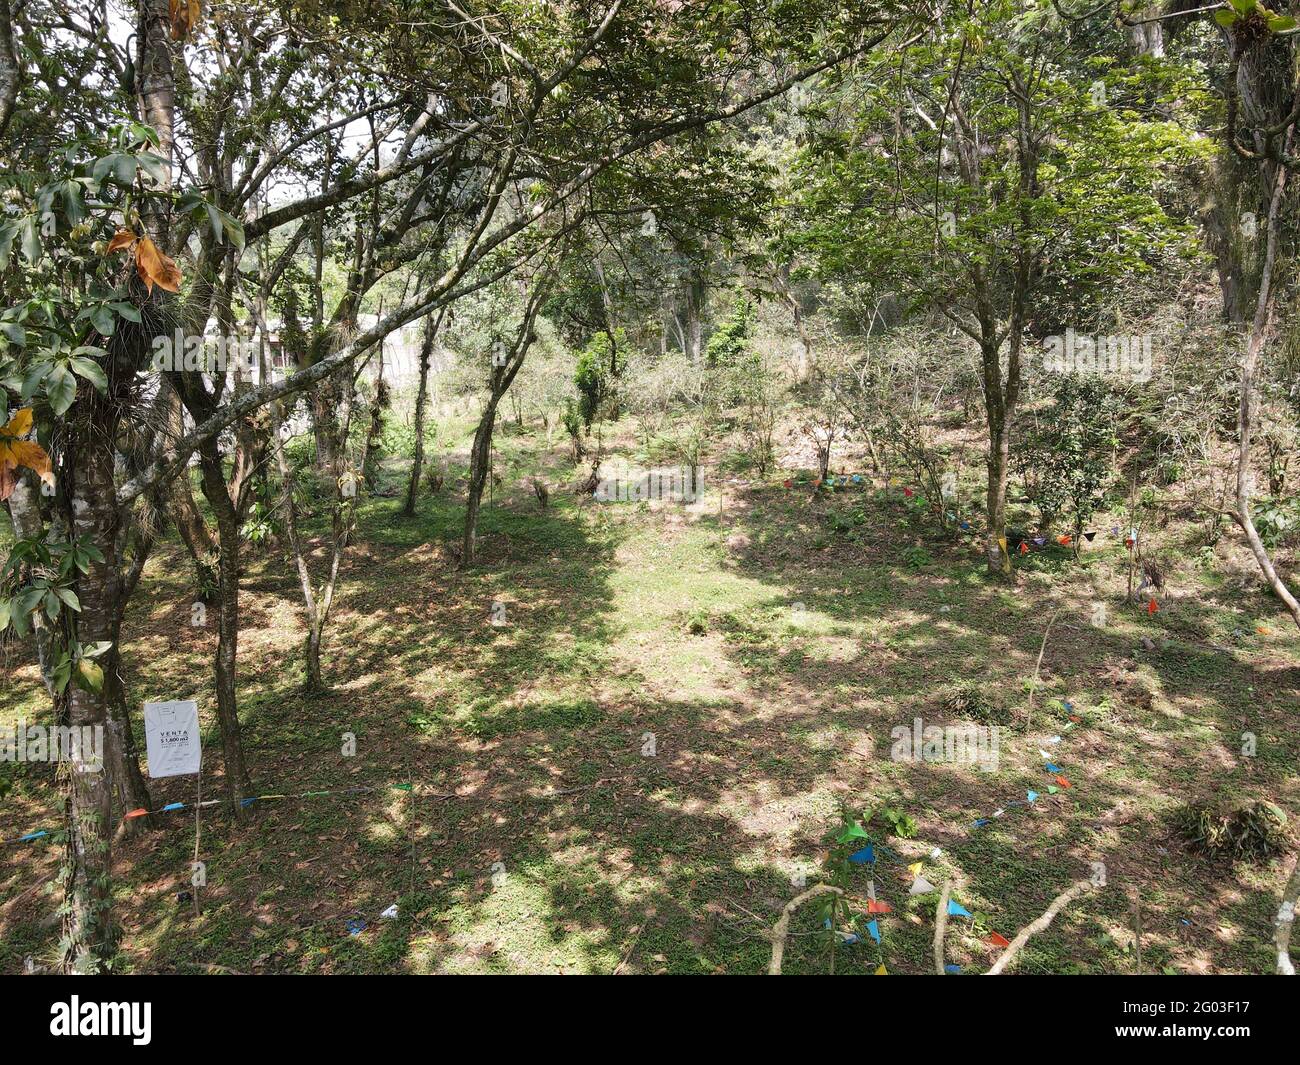 XALAPA, MESSICO - 29 maggio 2021: Volare con il drone e scattare fotografie della zona Coatepec Veracruz Briones, nonché le sue aree verdi, un ar Foto Stock